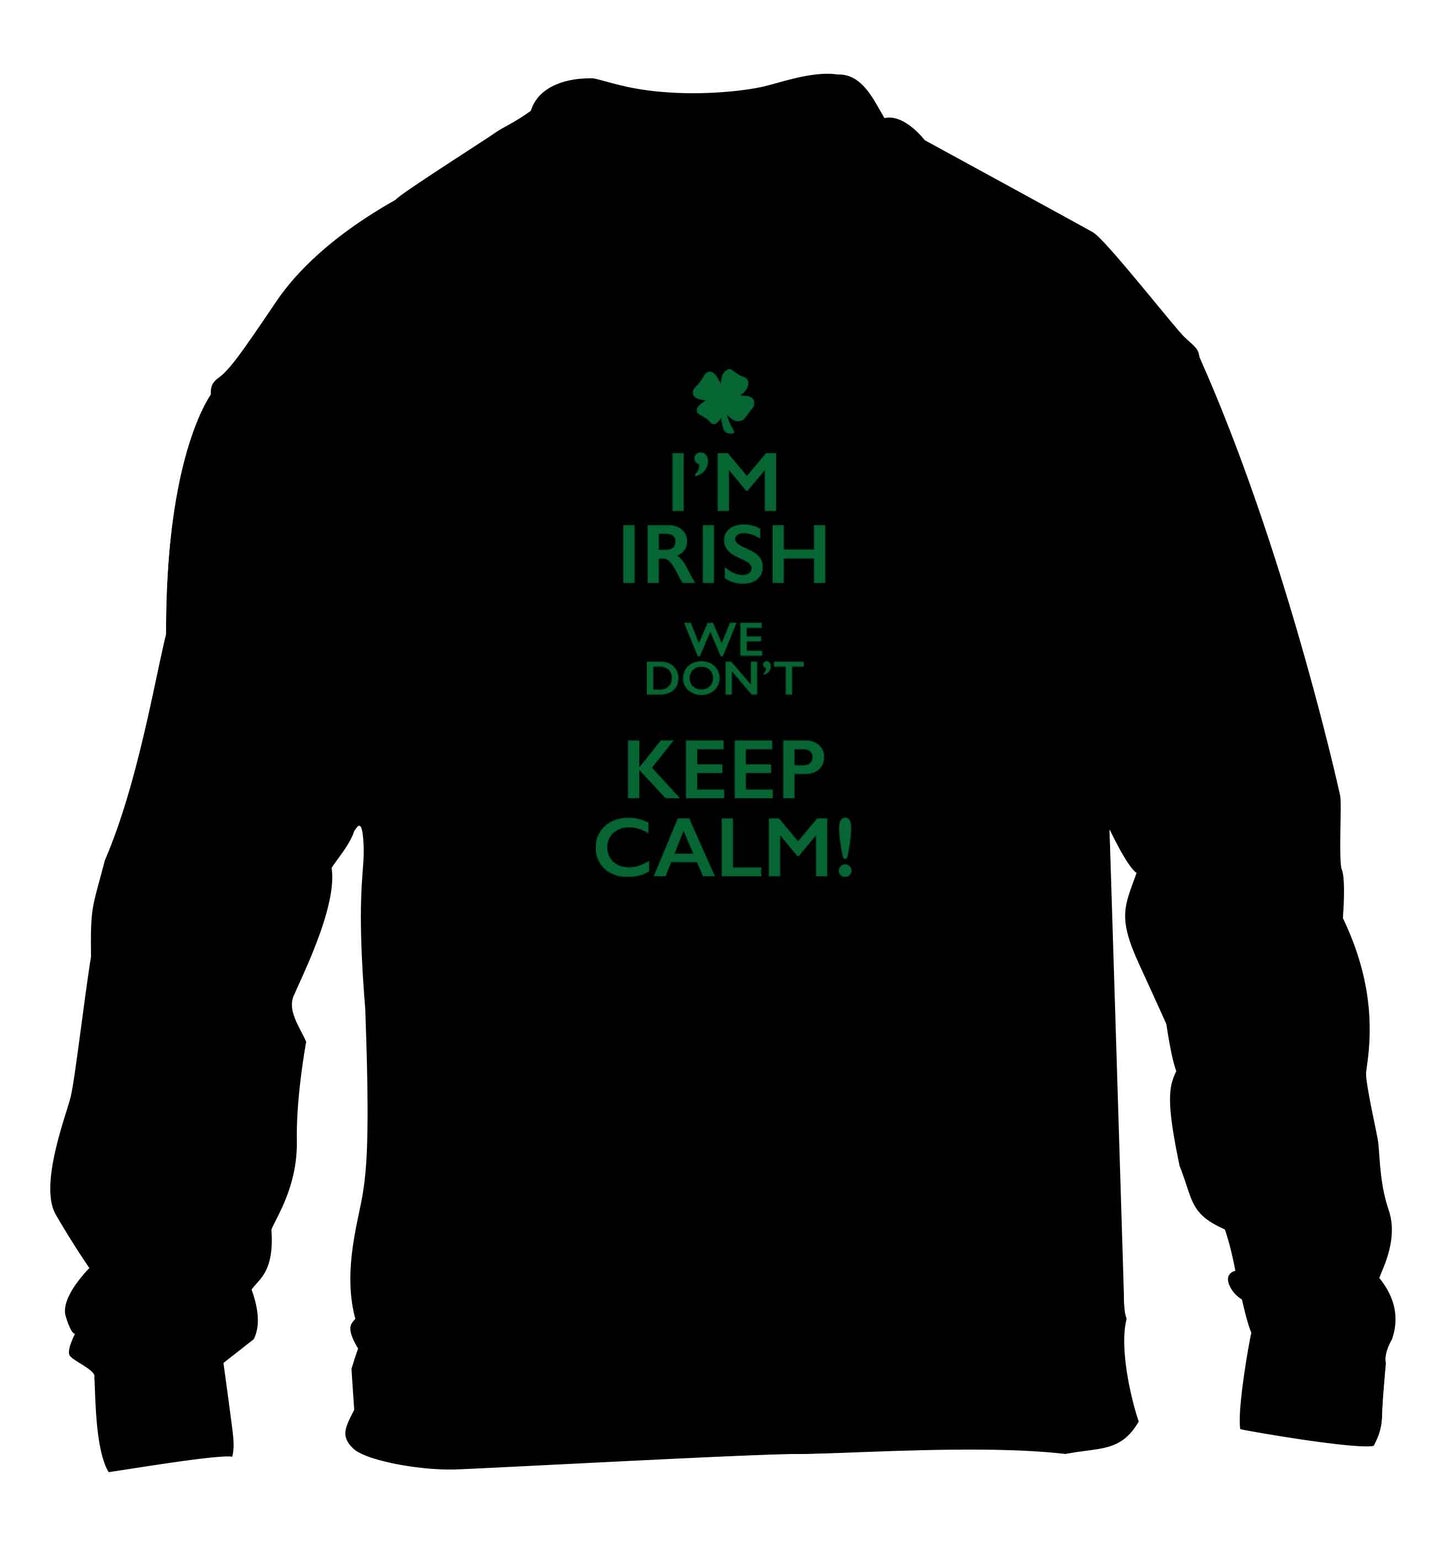 I'm Irish we don't keep calm children's black sweater 12-13 Years